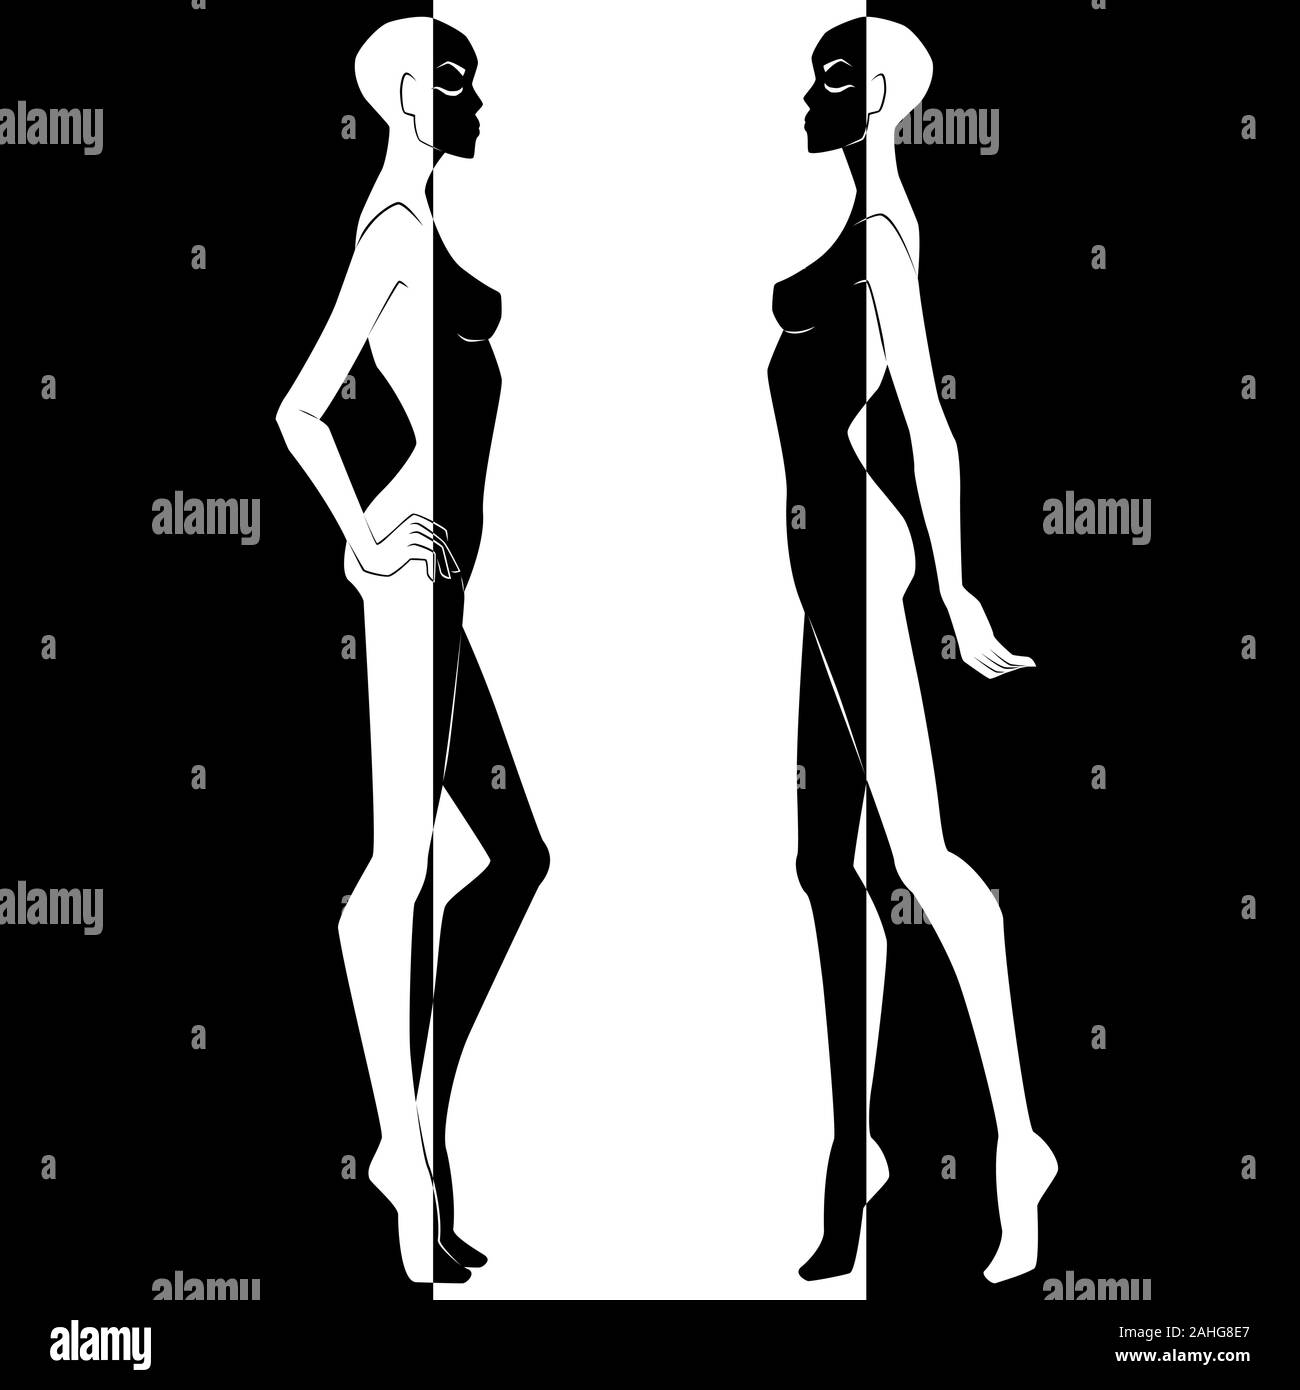 Zusammenfassung von zwei elegante weibliche Körper in negativen und positiven Raum Split, Schwarze und Weiße konzeptionelle Ausdruck, hand Zeichnung Abbildung Stock Vektor